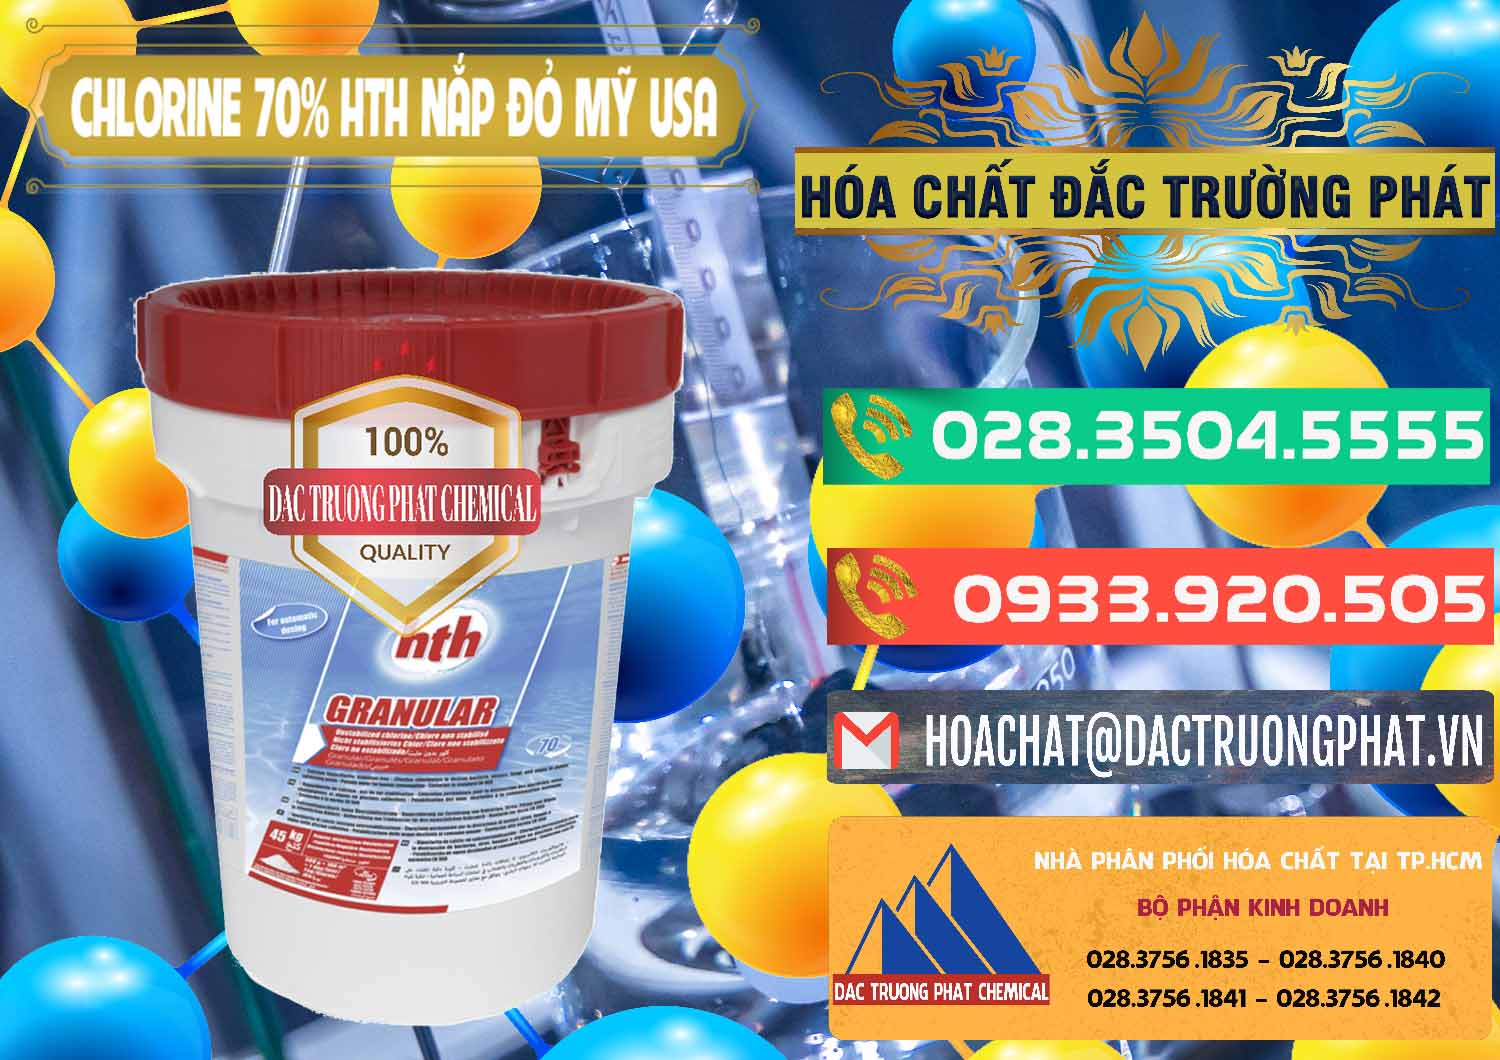 Chuyên bán & cung ứng Clorin – Chlorine 70% HTH Nắp Đỏ Mỹ Usa - 0244 - Cty chuyên nhập khẩu - cung cấp hóa chất tại TP.HCM - congtyhoachat.com.vn